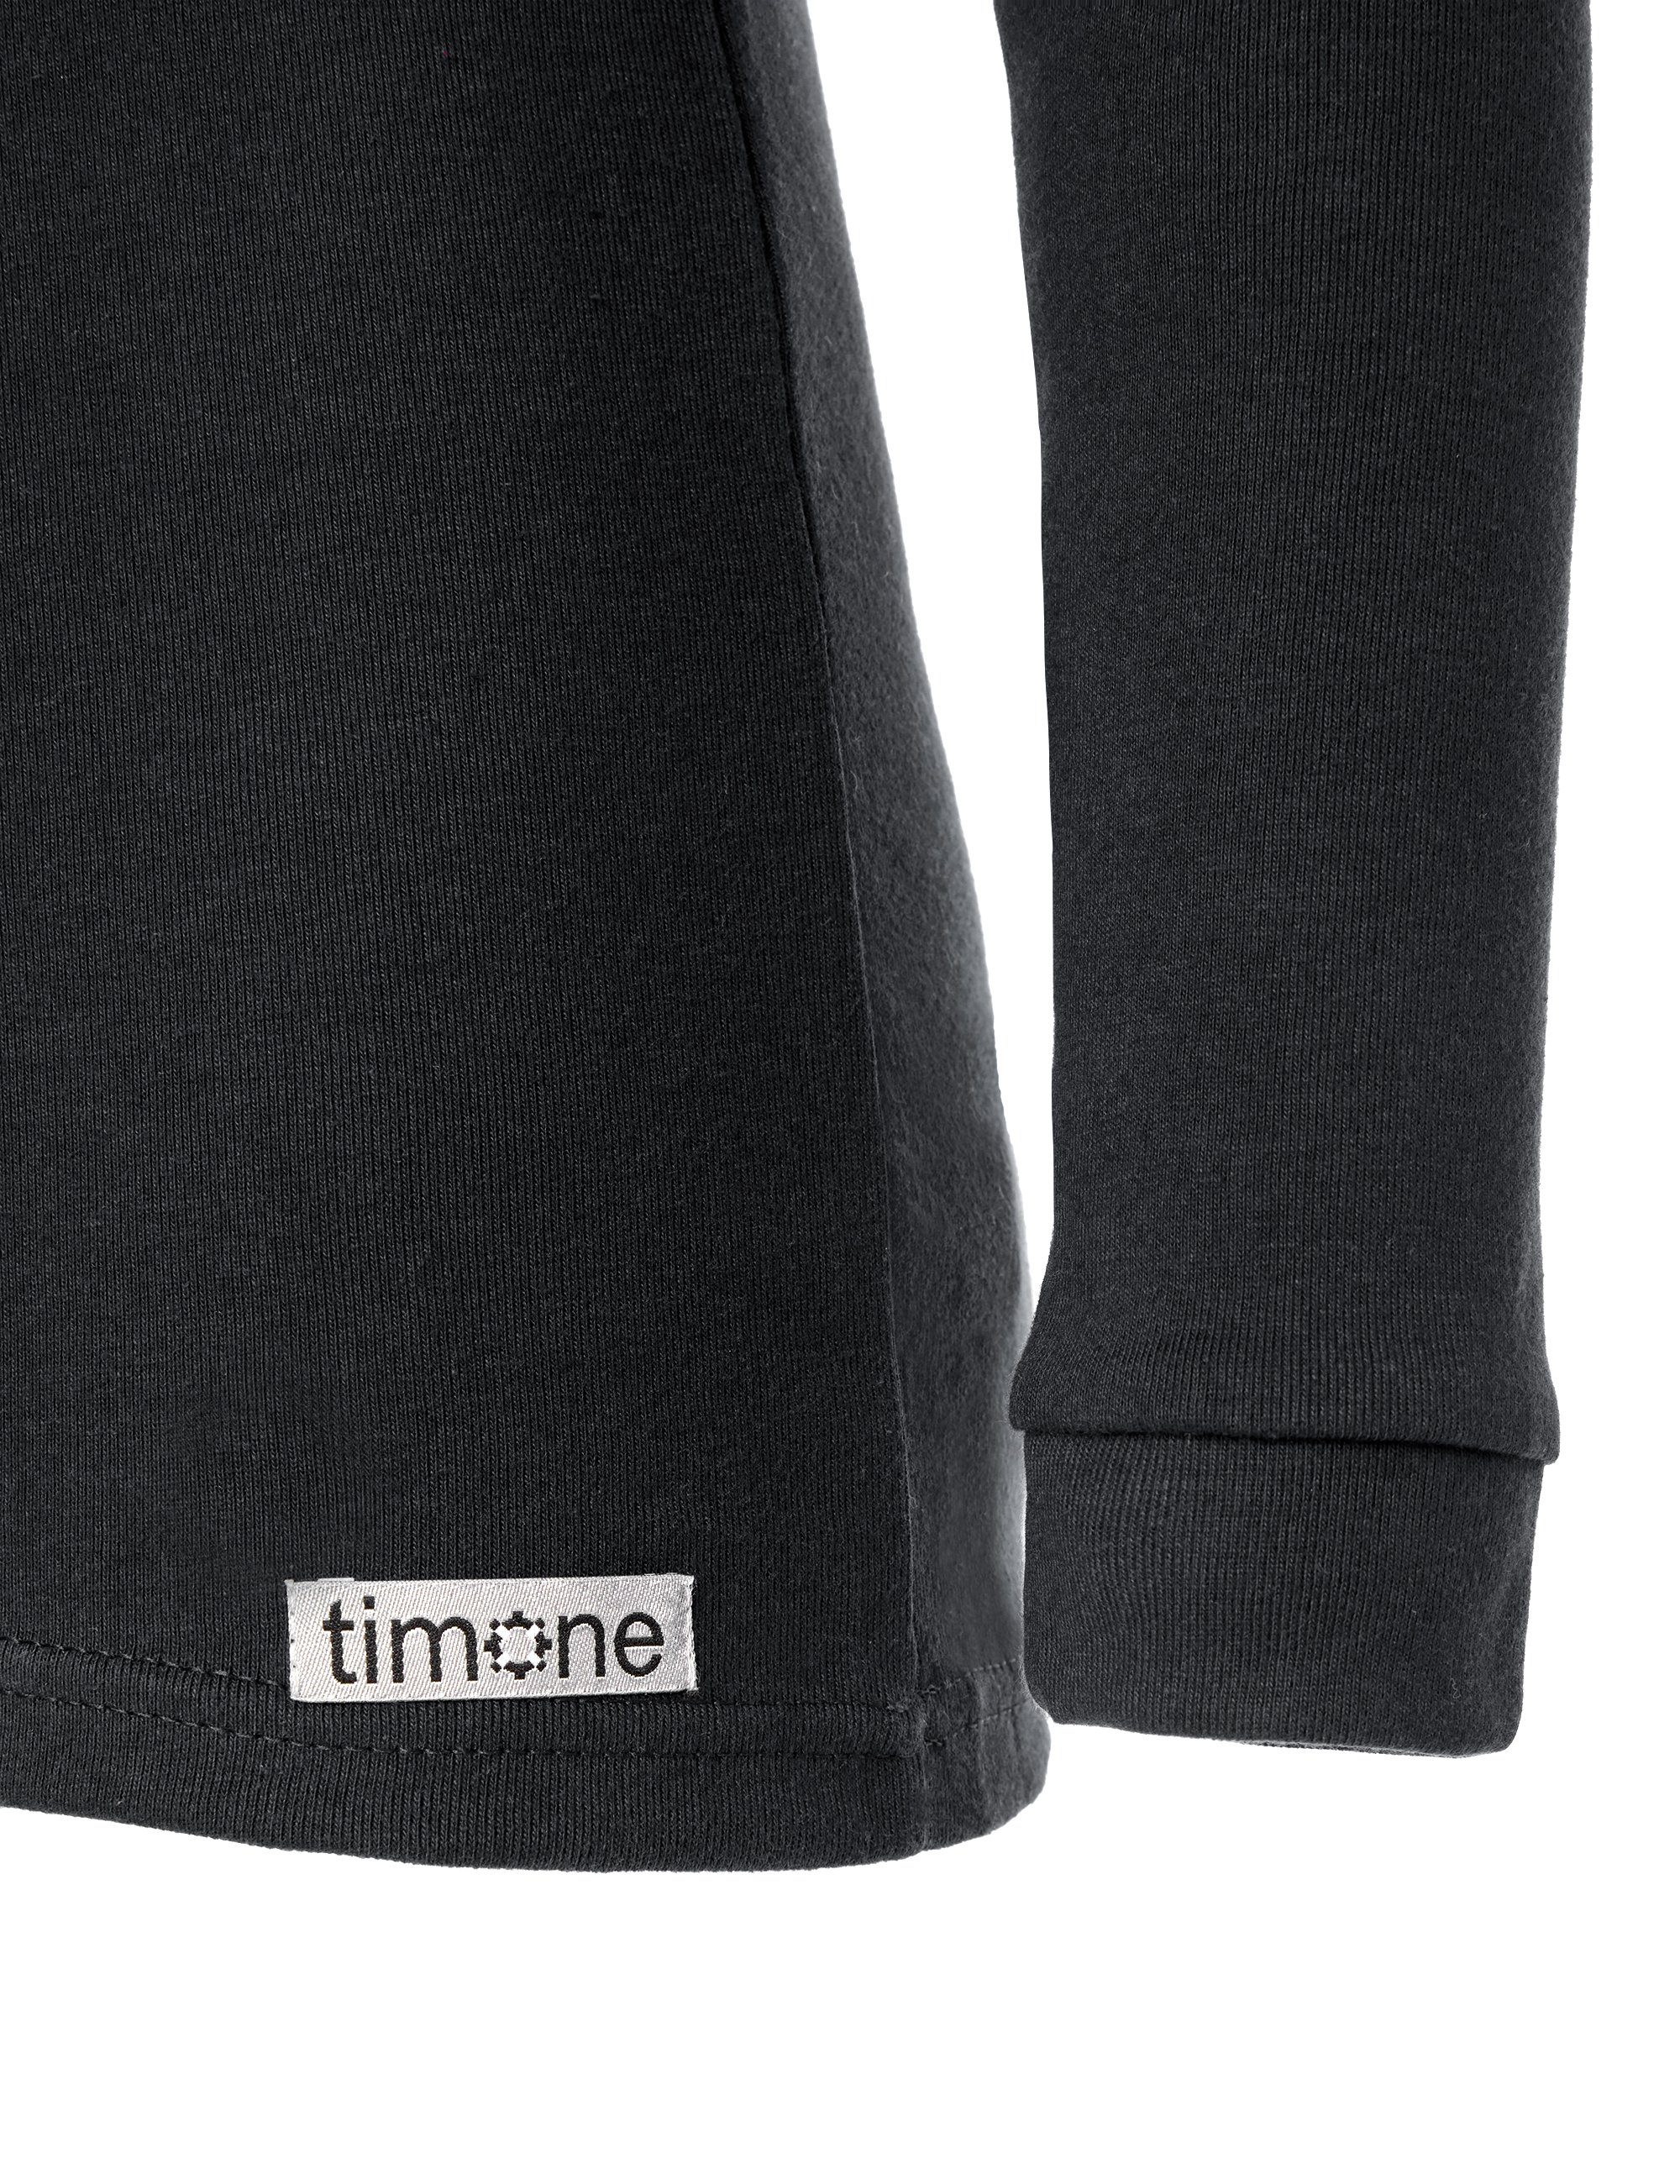 Set Unterhemd Jungen Schwarz Unterwäsche (Set, Unterhose) mit Timone